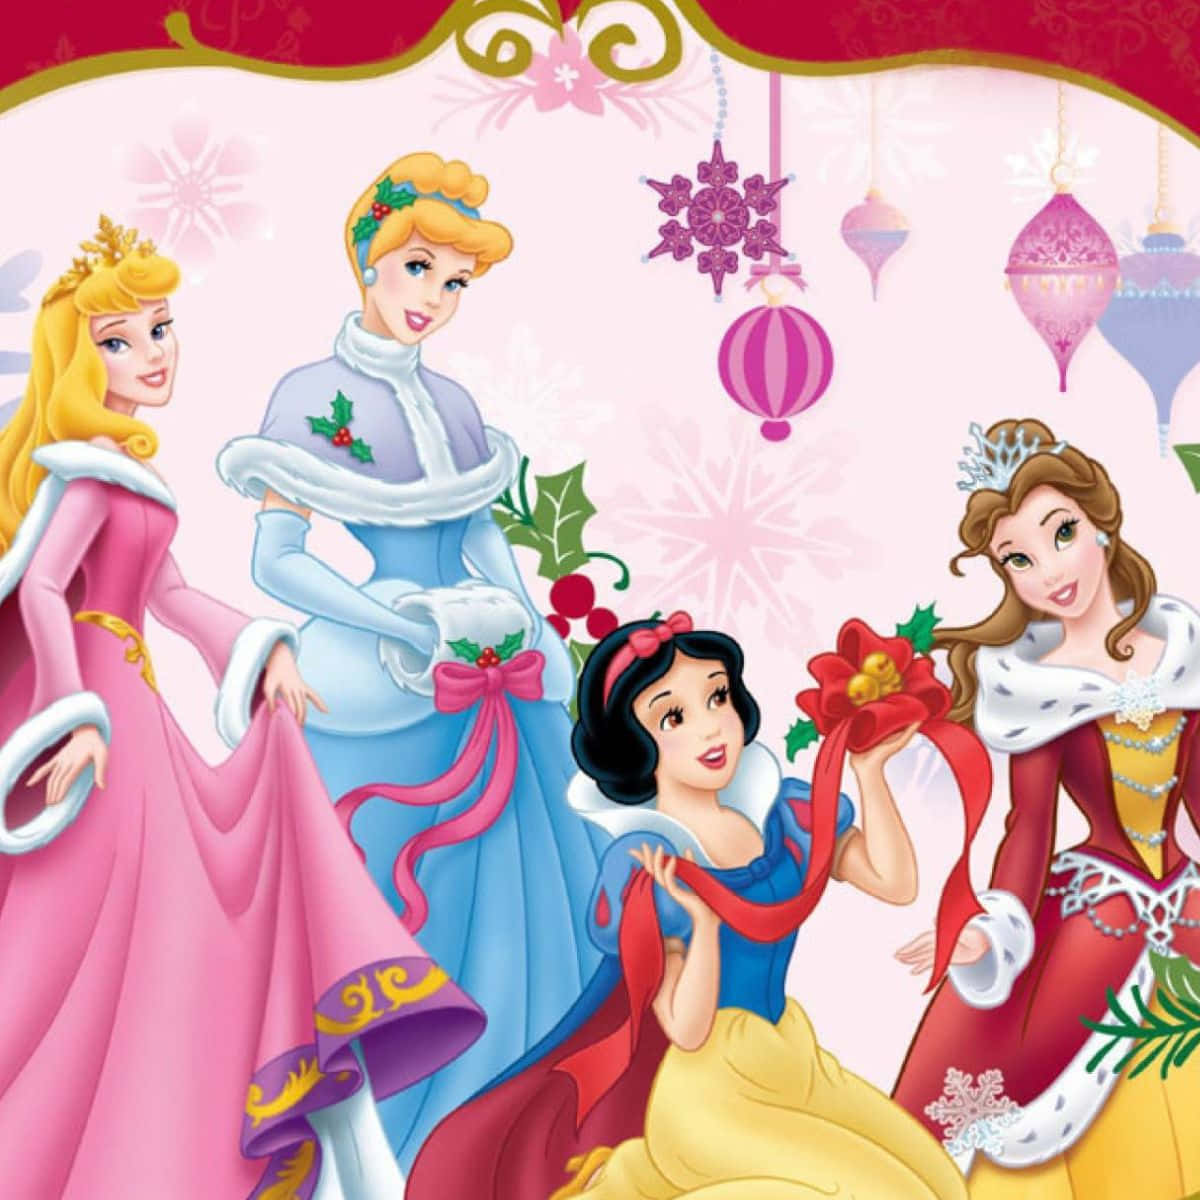 Experience Christmas Magic at Disney this Holiday Season